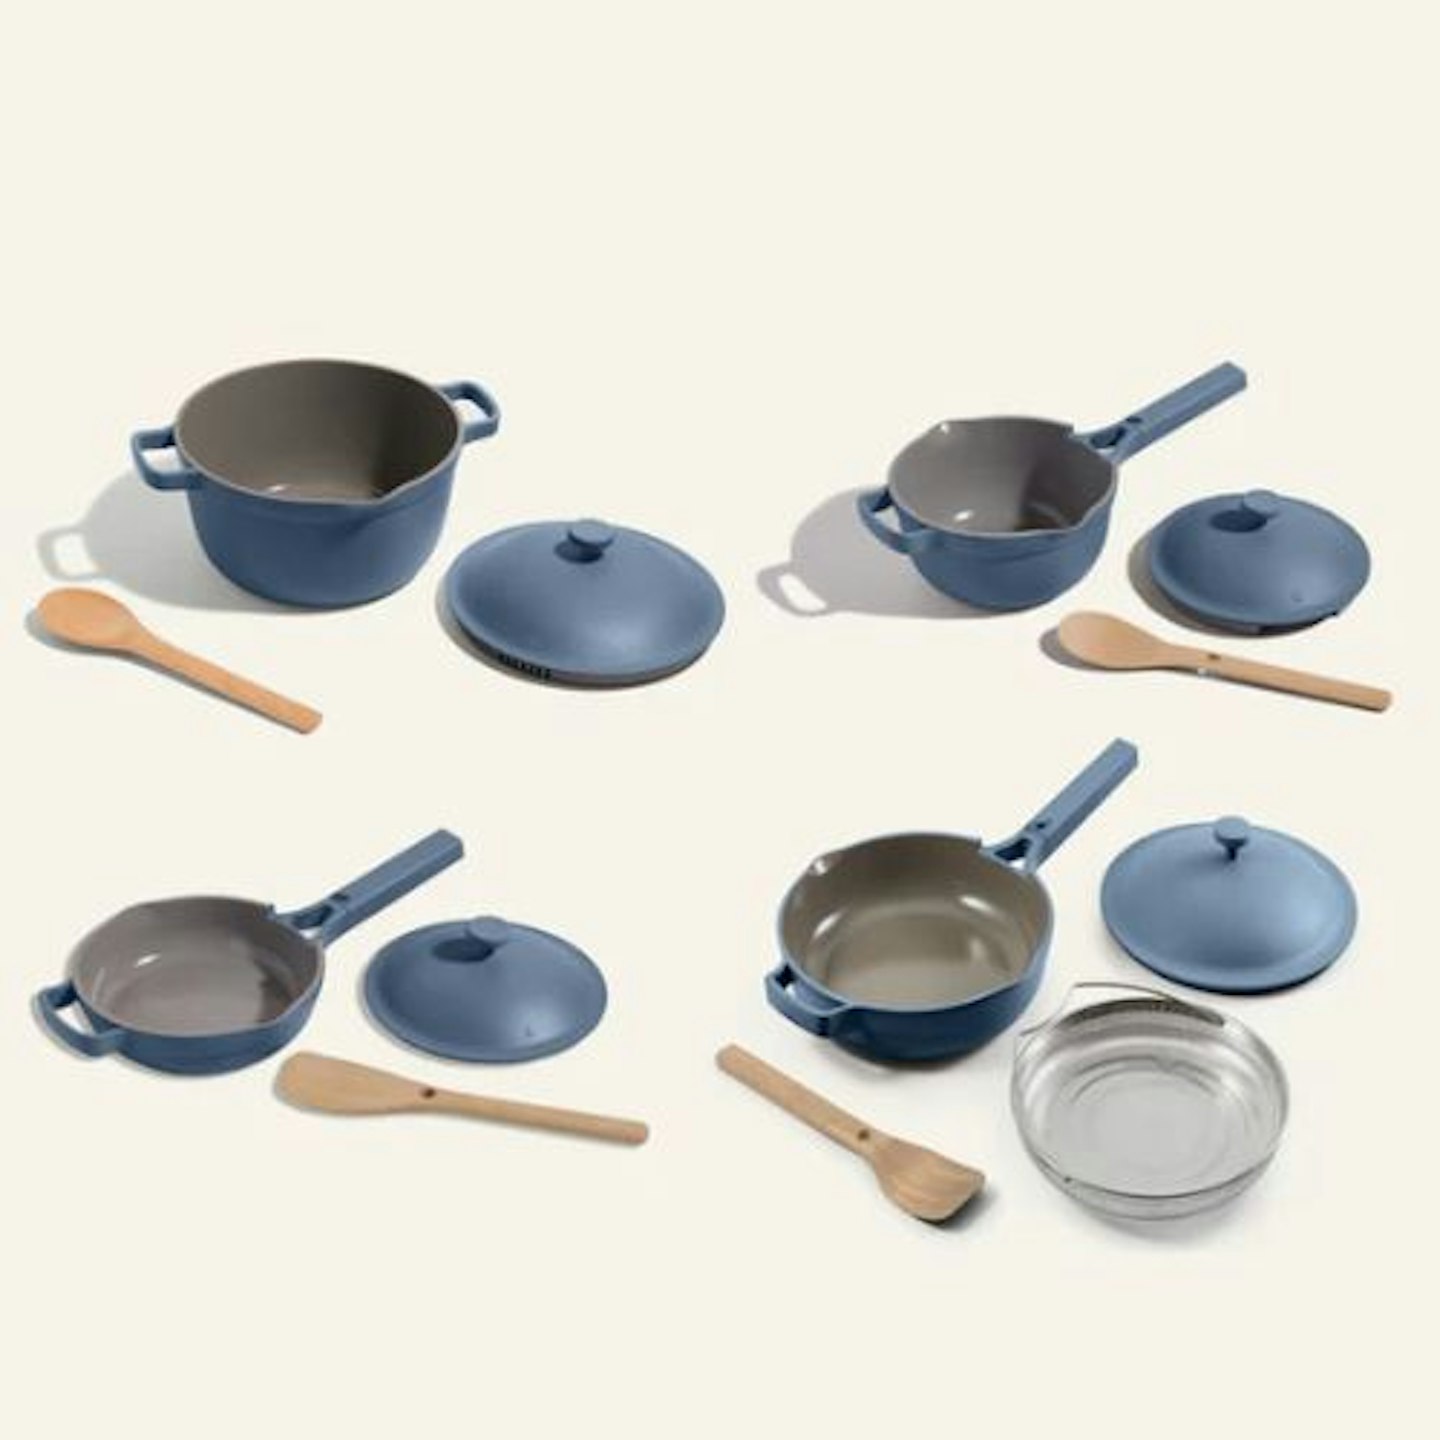 A 4-piece Always Pan and Perfect Pot set